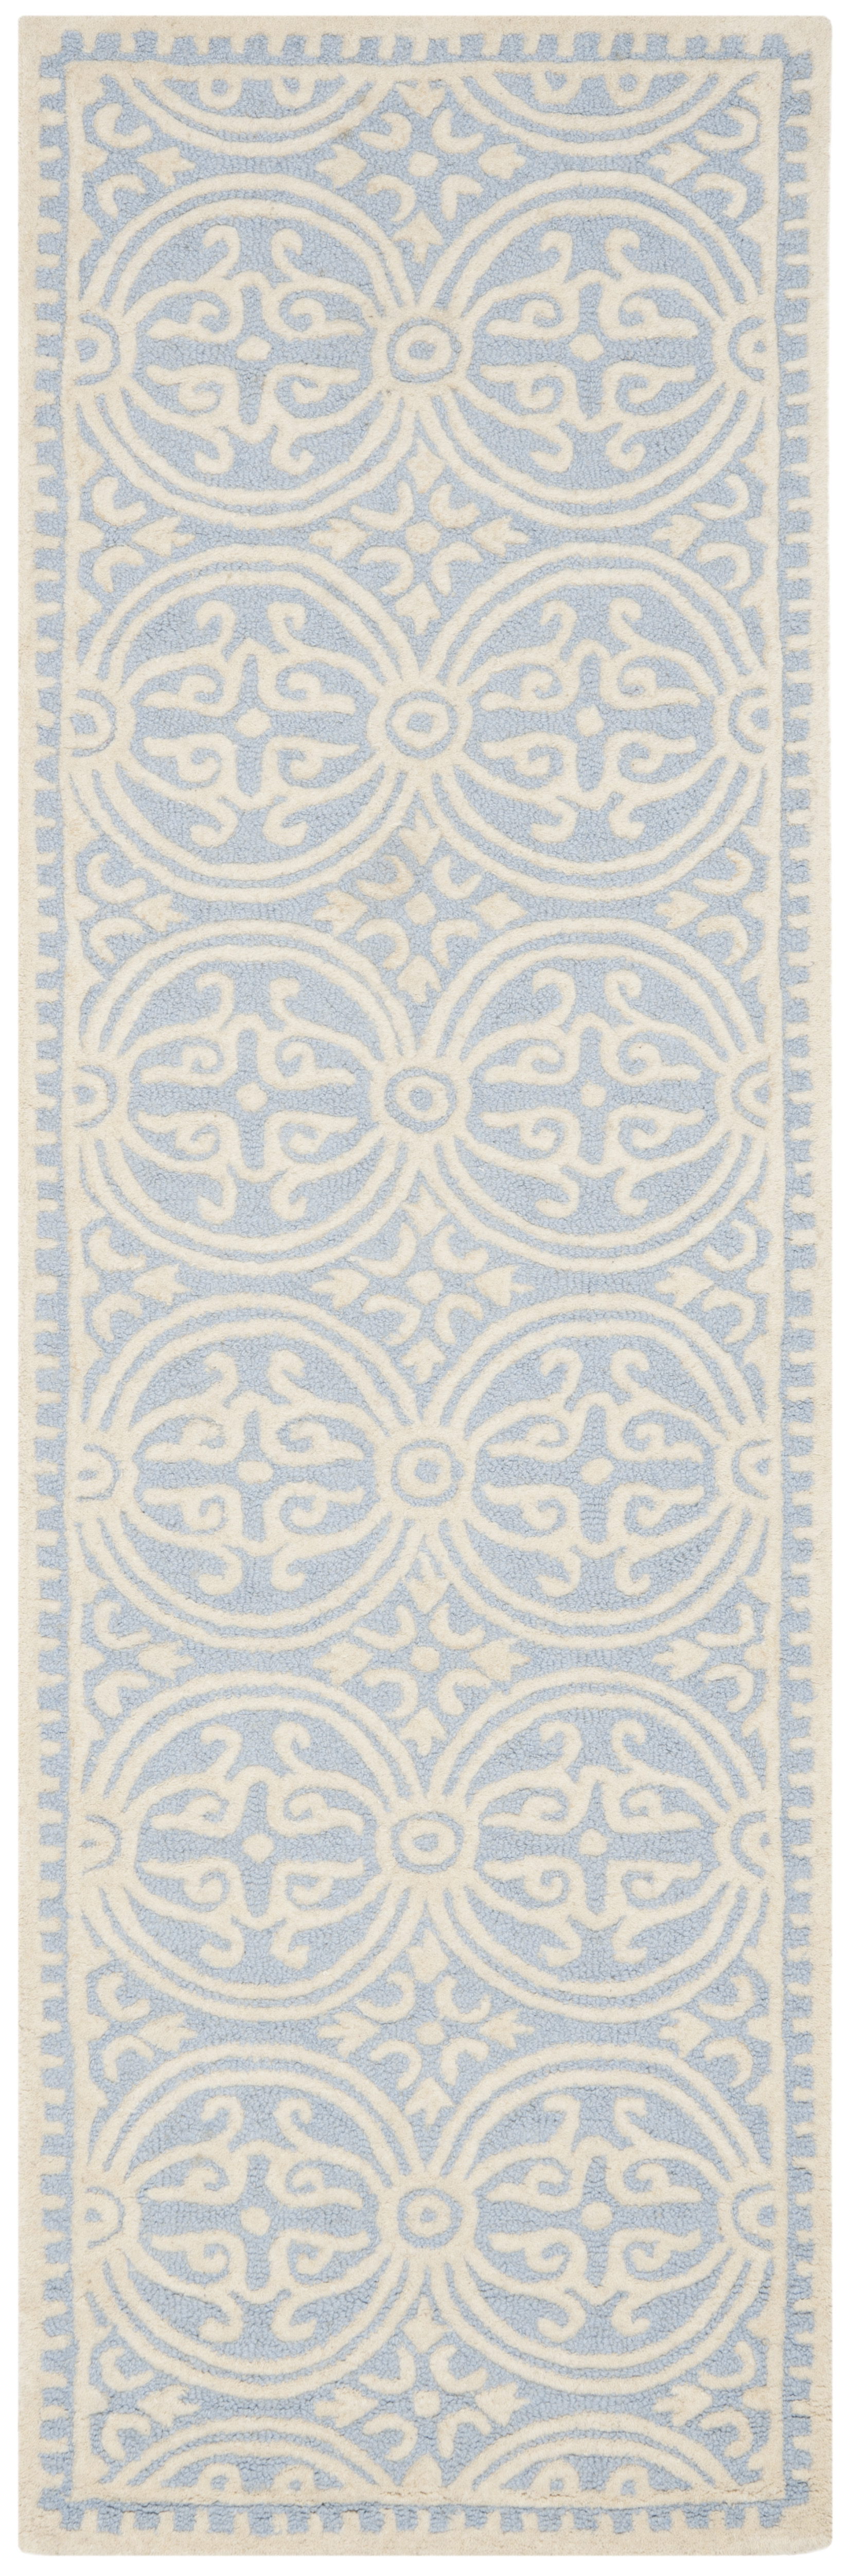 Tapis de salon interieur en bleu clair & ivoire, 76 x 244 cm